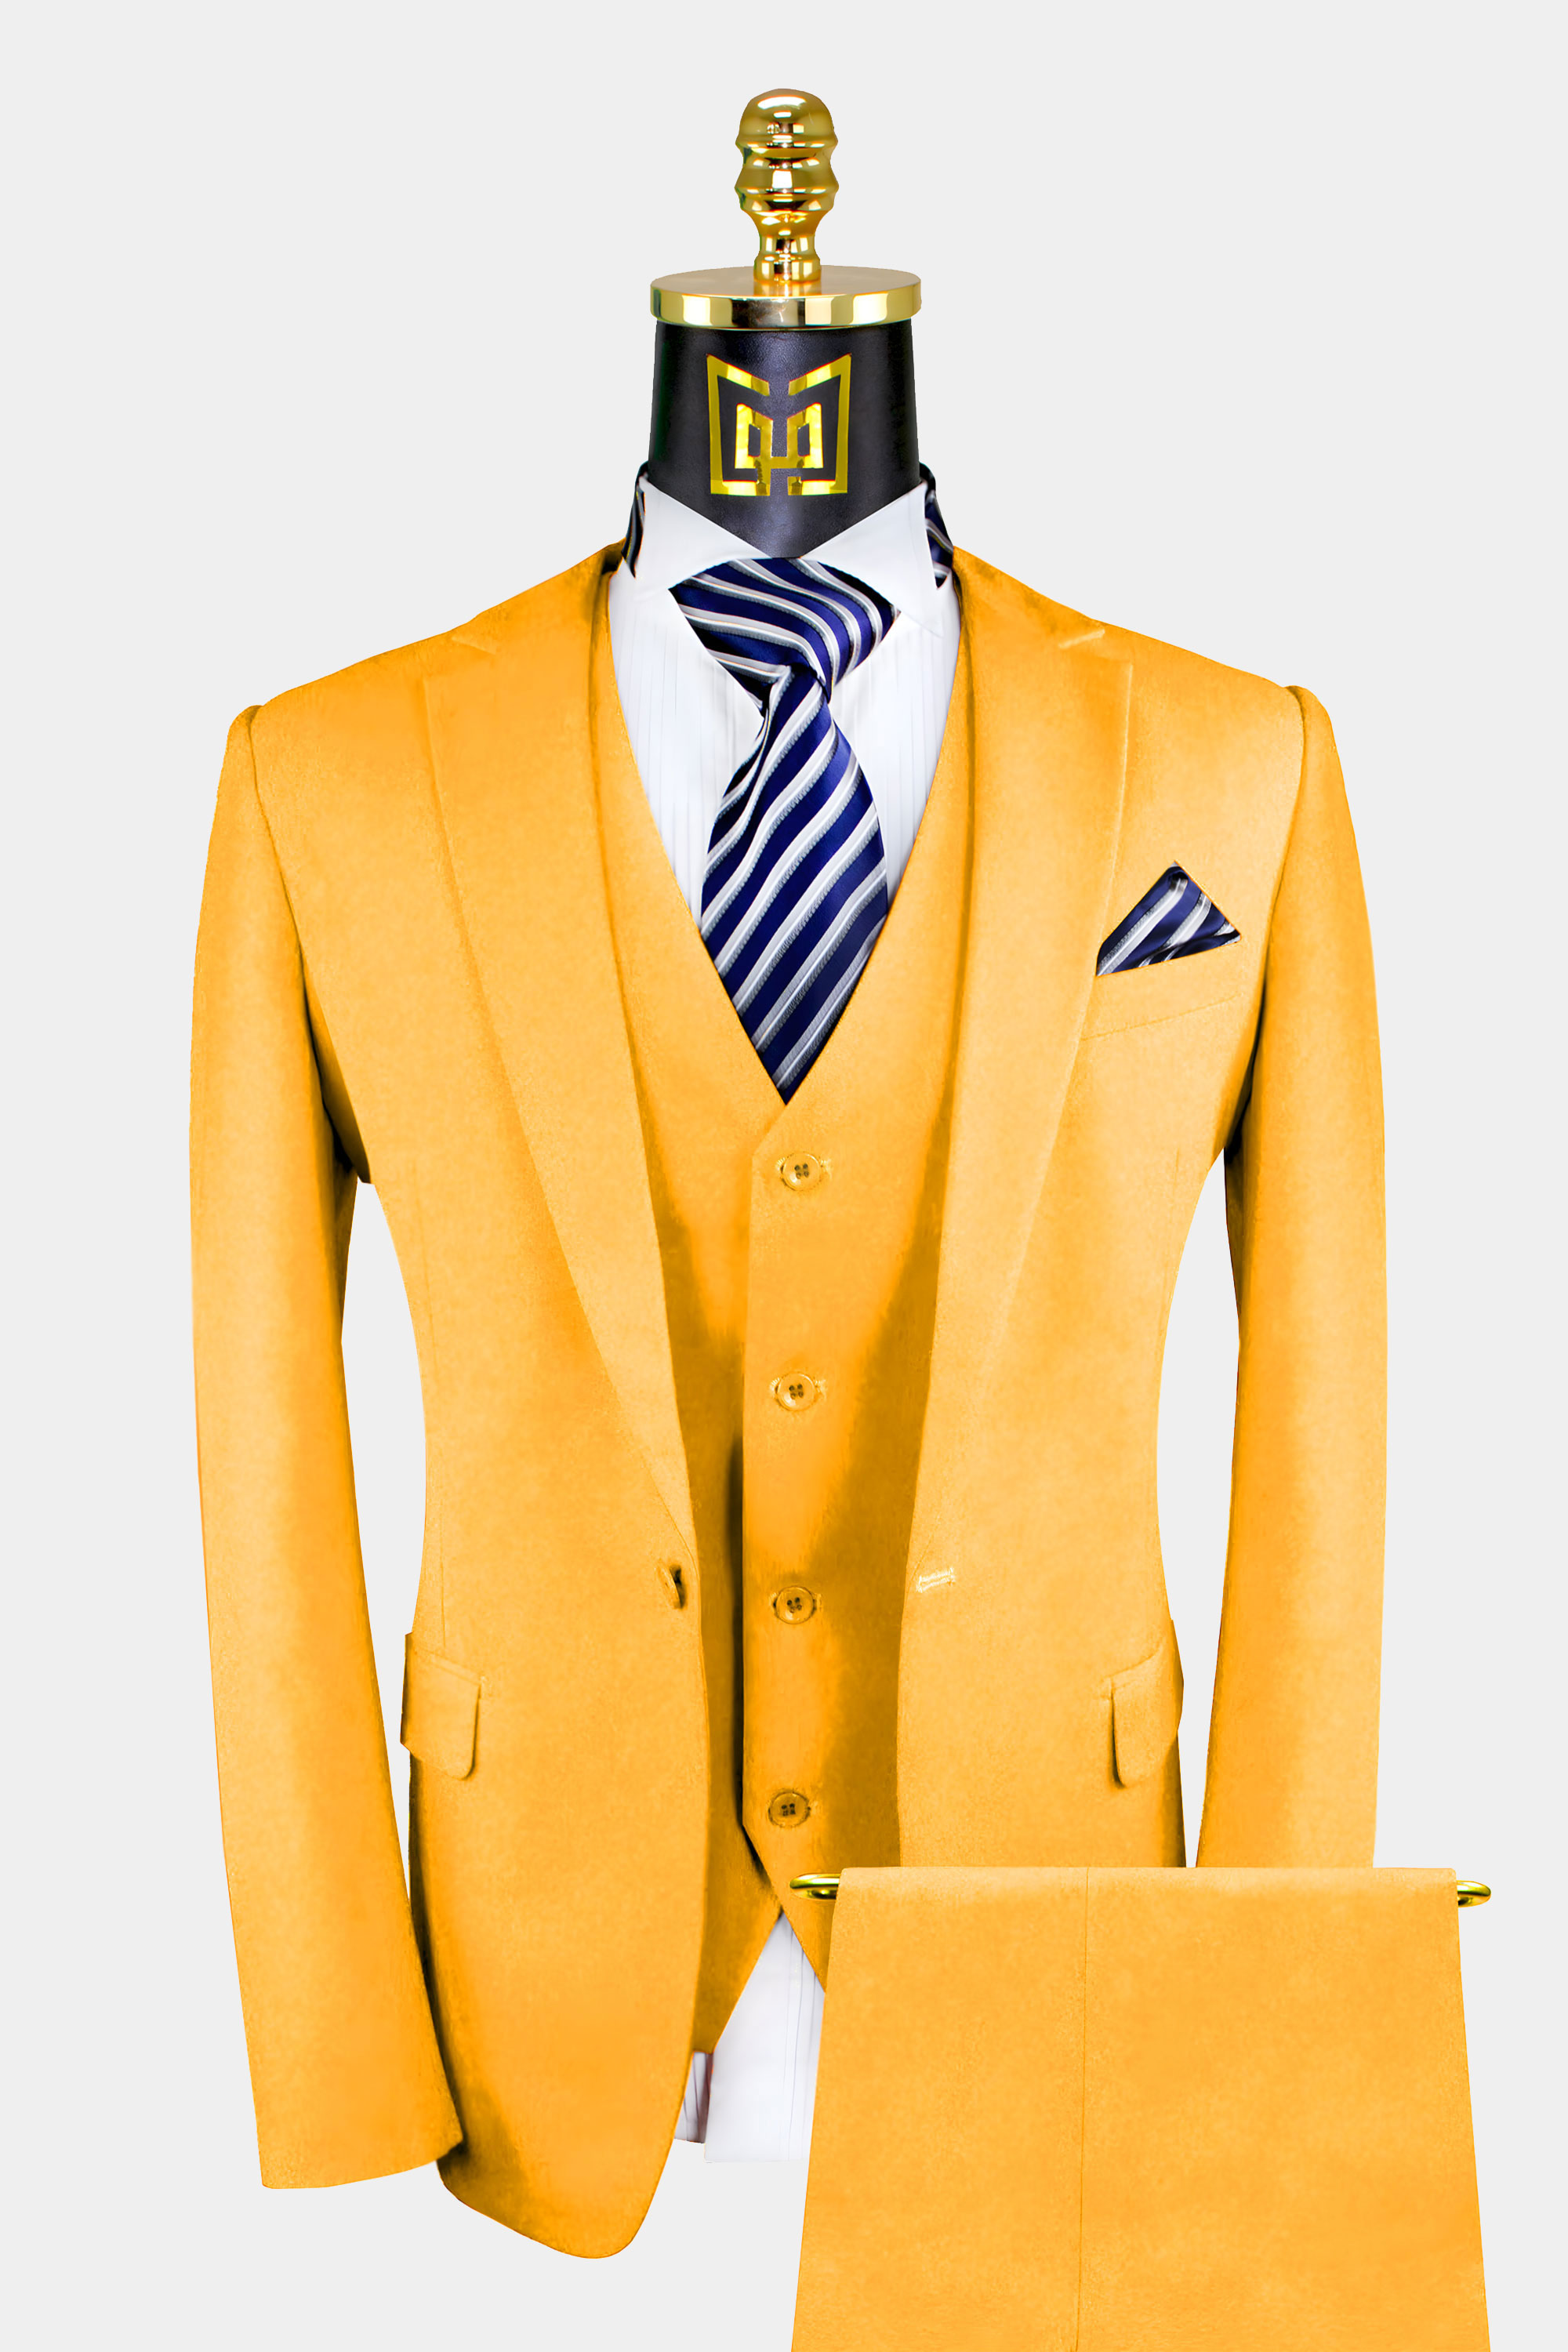 Mens-All-Gold-Suit-Wedding-Groom-Prom-Tuxedo-from-Gentlemansguru.Com